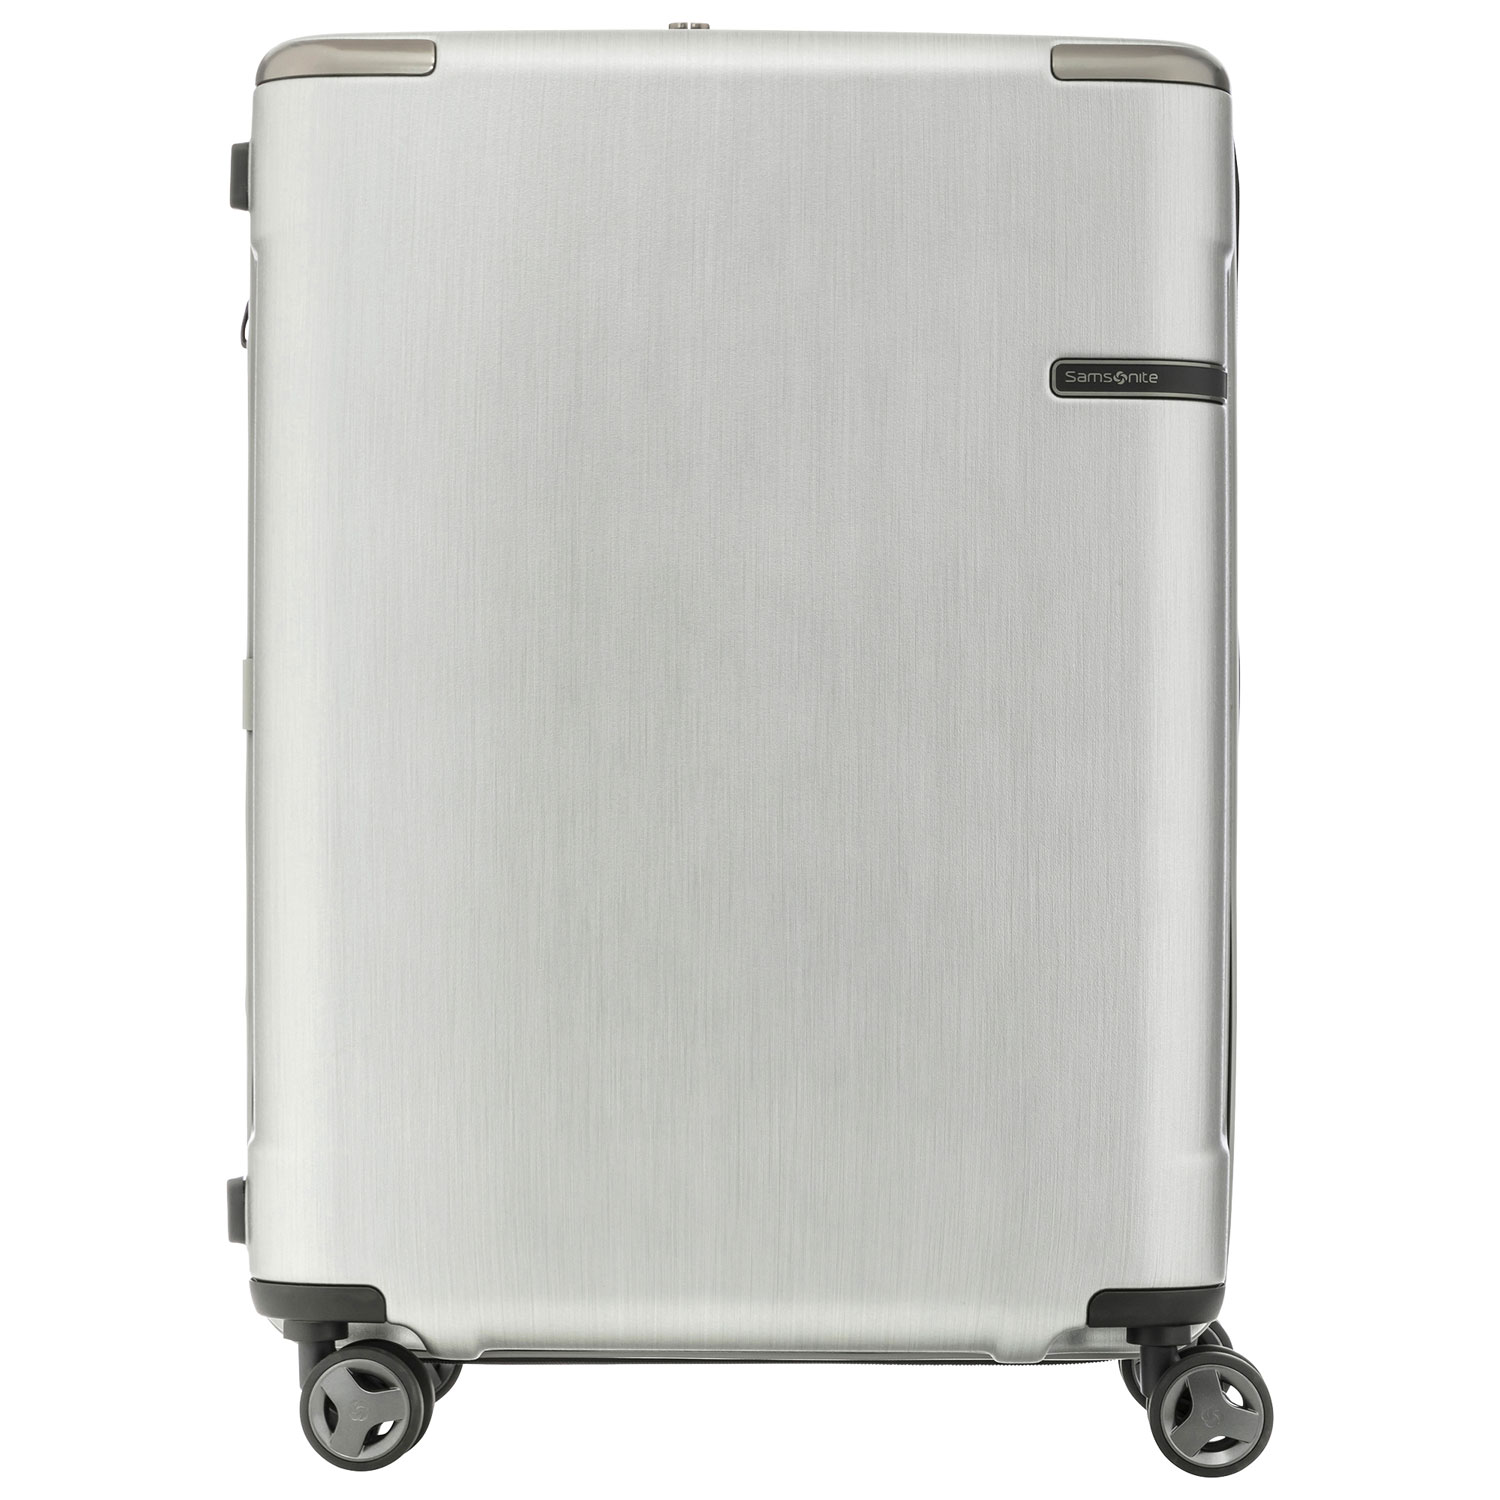 Samsonite Evoa 24" Hard Side Expandable Luggage - Brushed Silver